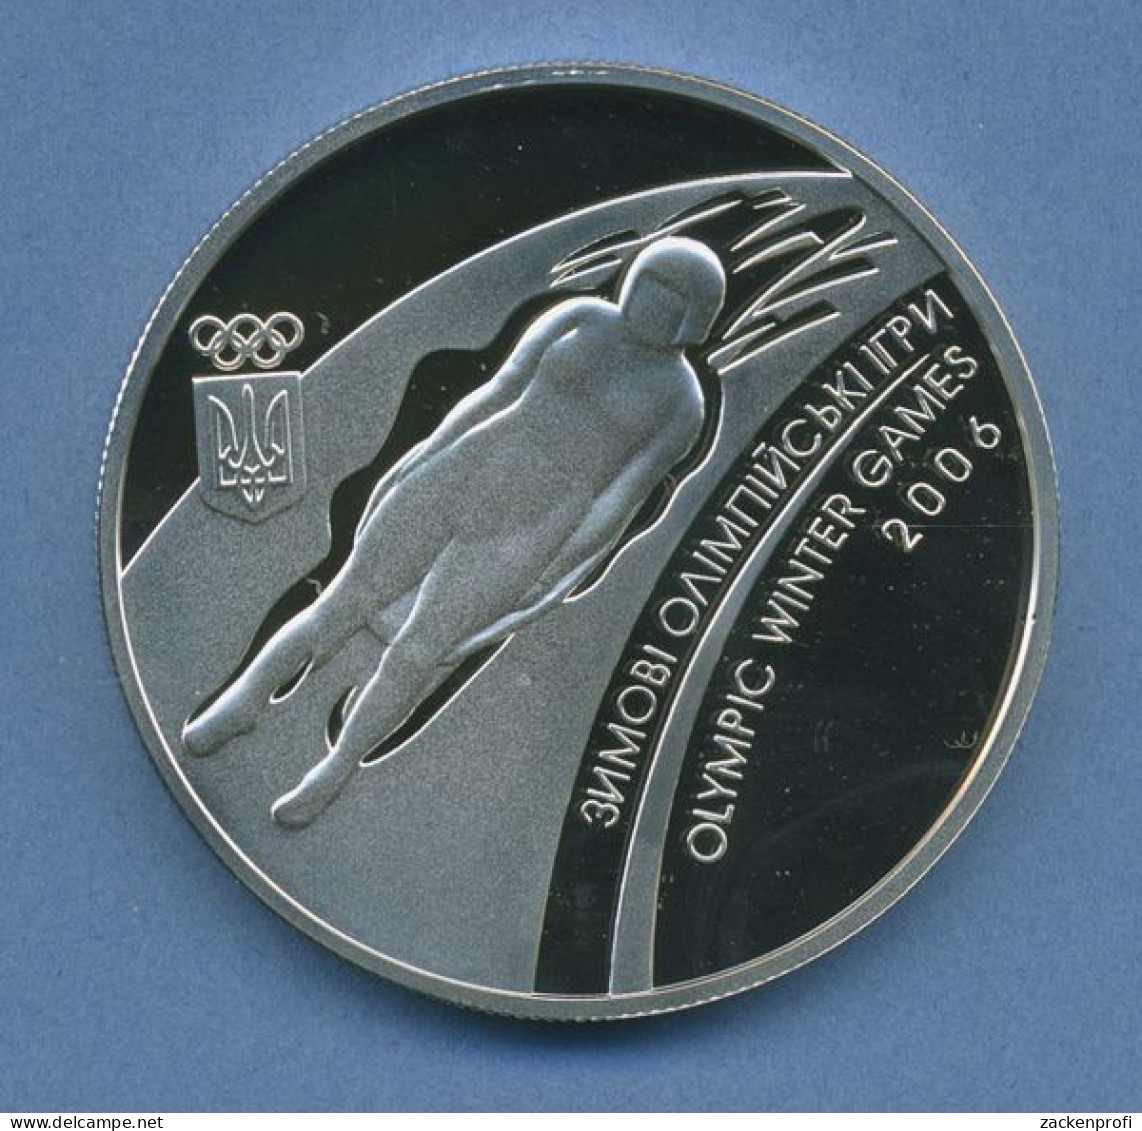 Ukraine 10 Hryven 2006, Silber, Olympische Winterspiele Turin KM 427 PP (m4238) - Ukraine